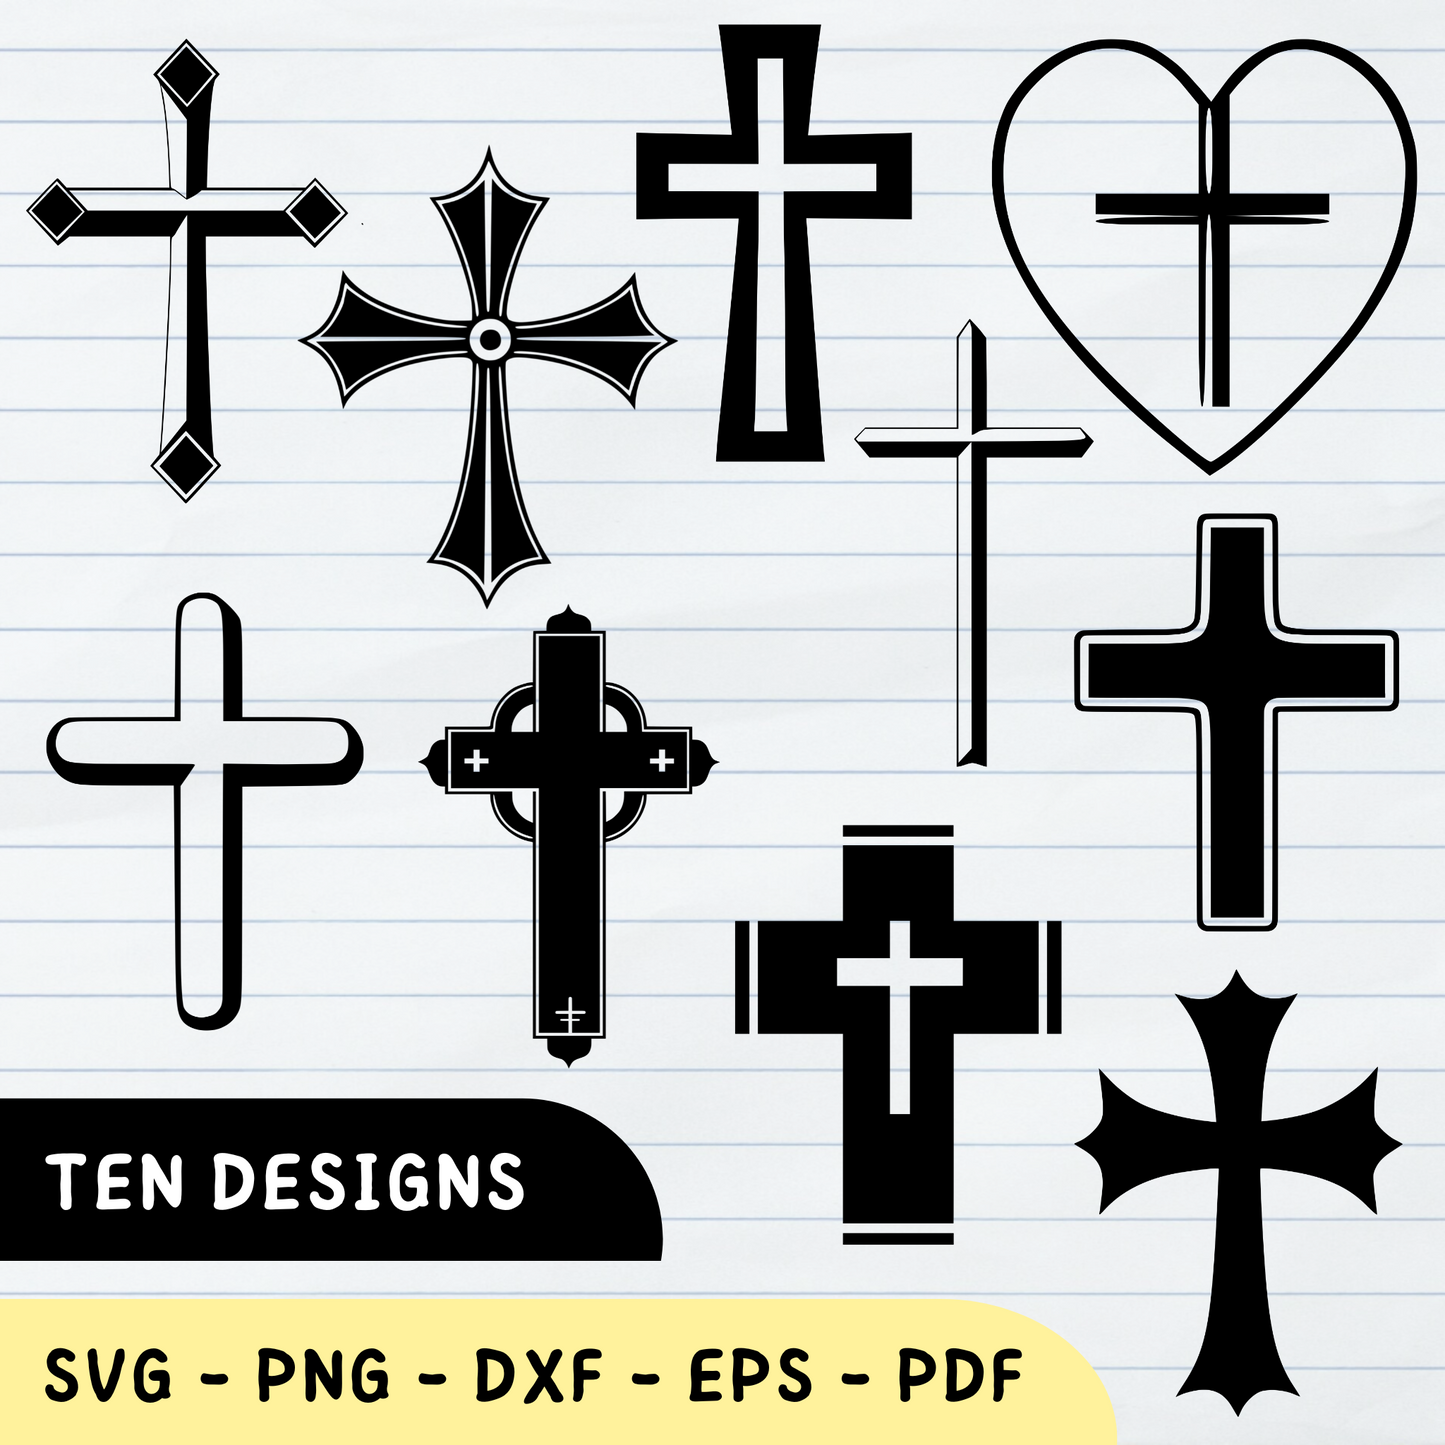 Christian Cross Vectores, Christian Cross, Christian Cross Lover, Christian Cross SVG Bundle 1: 10 Designs